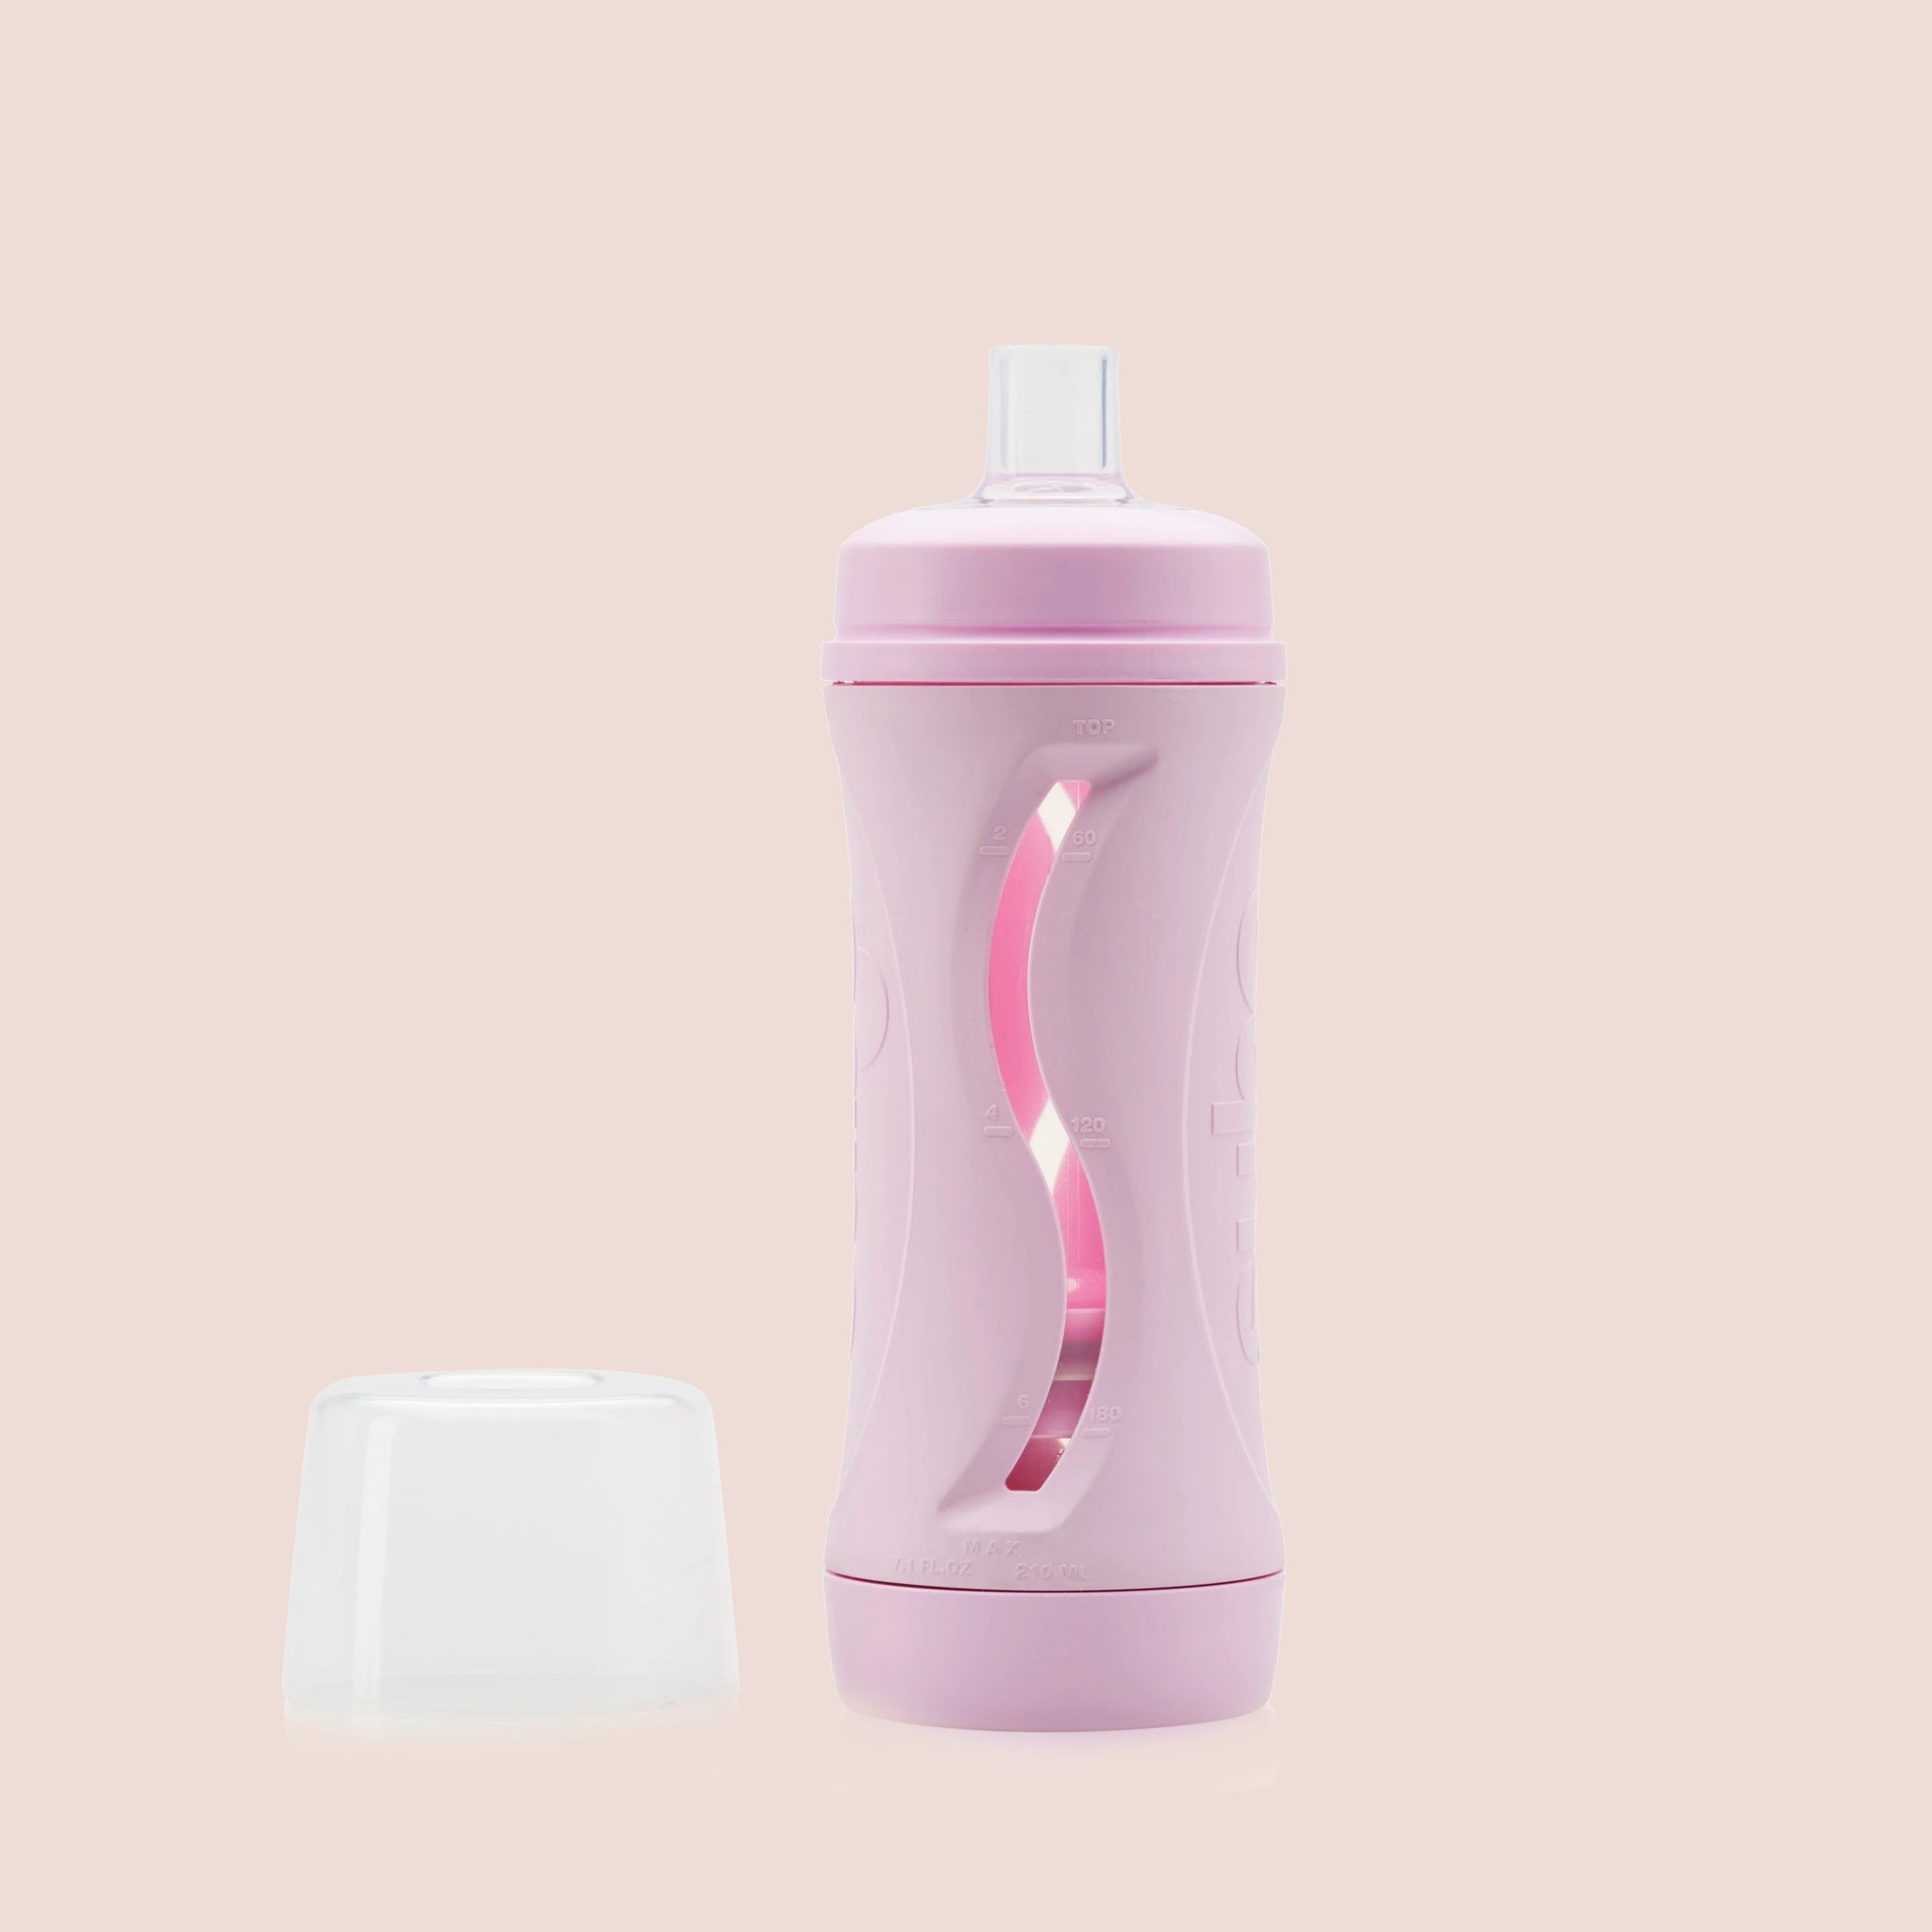 Subo Feeding Bottle - Pink